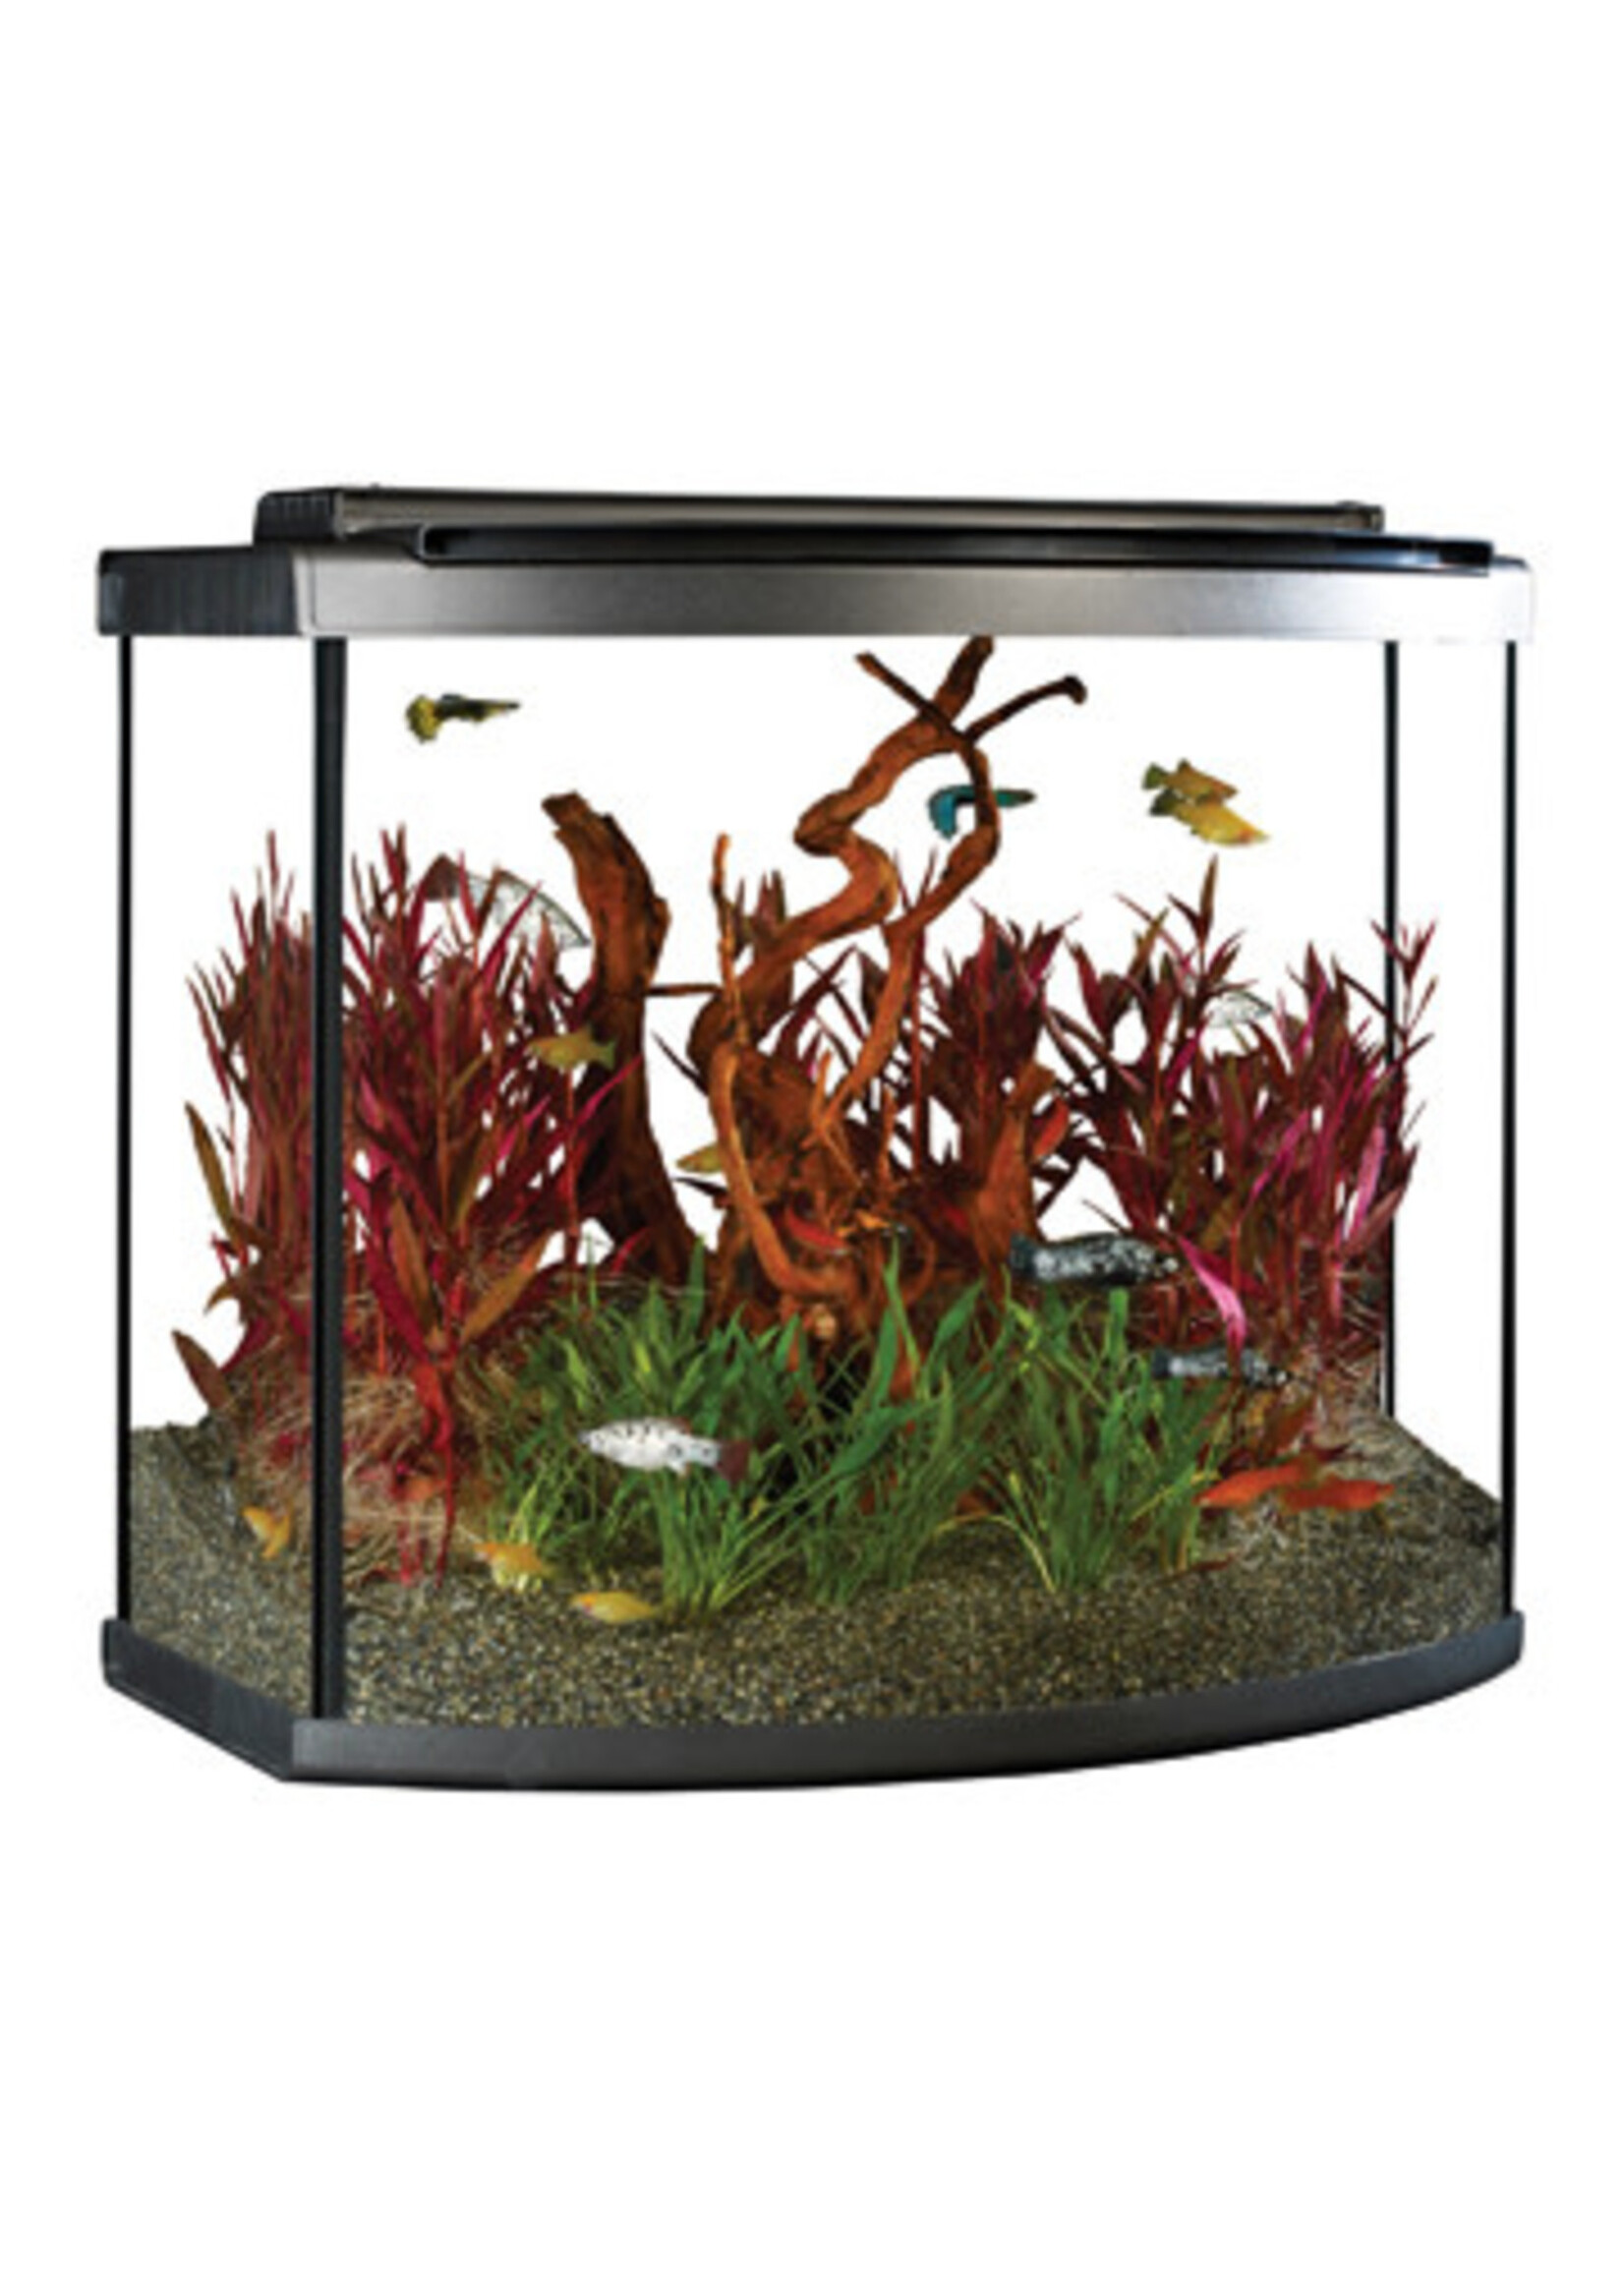 Fluval Fluval Premium Aquarium Kit w/LED